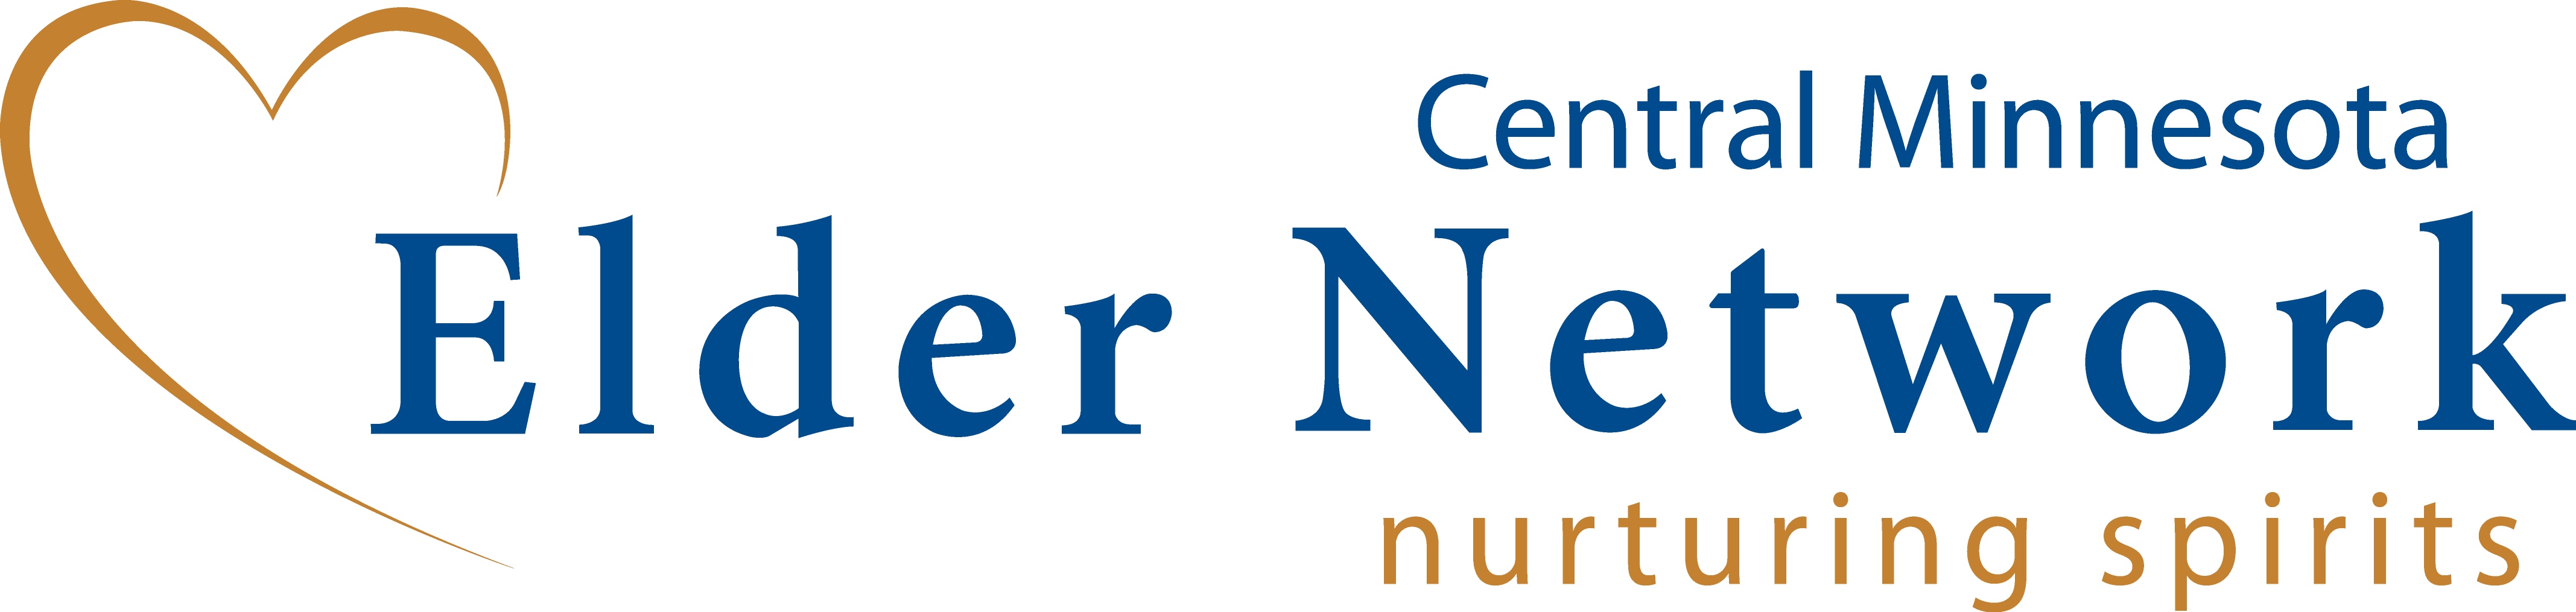 Central Minnesota Elder Network